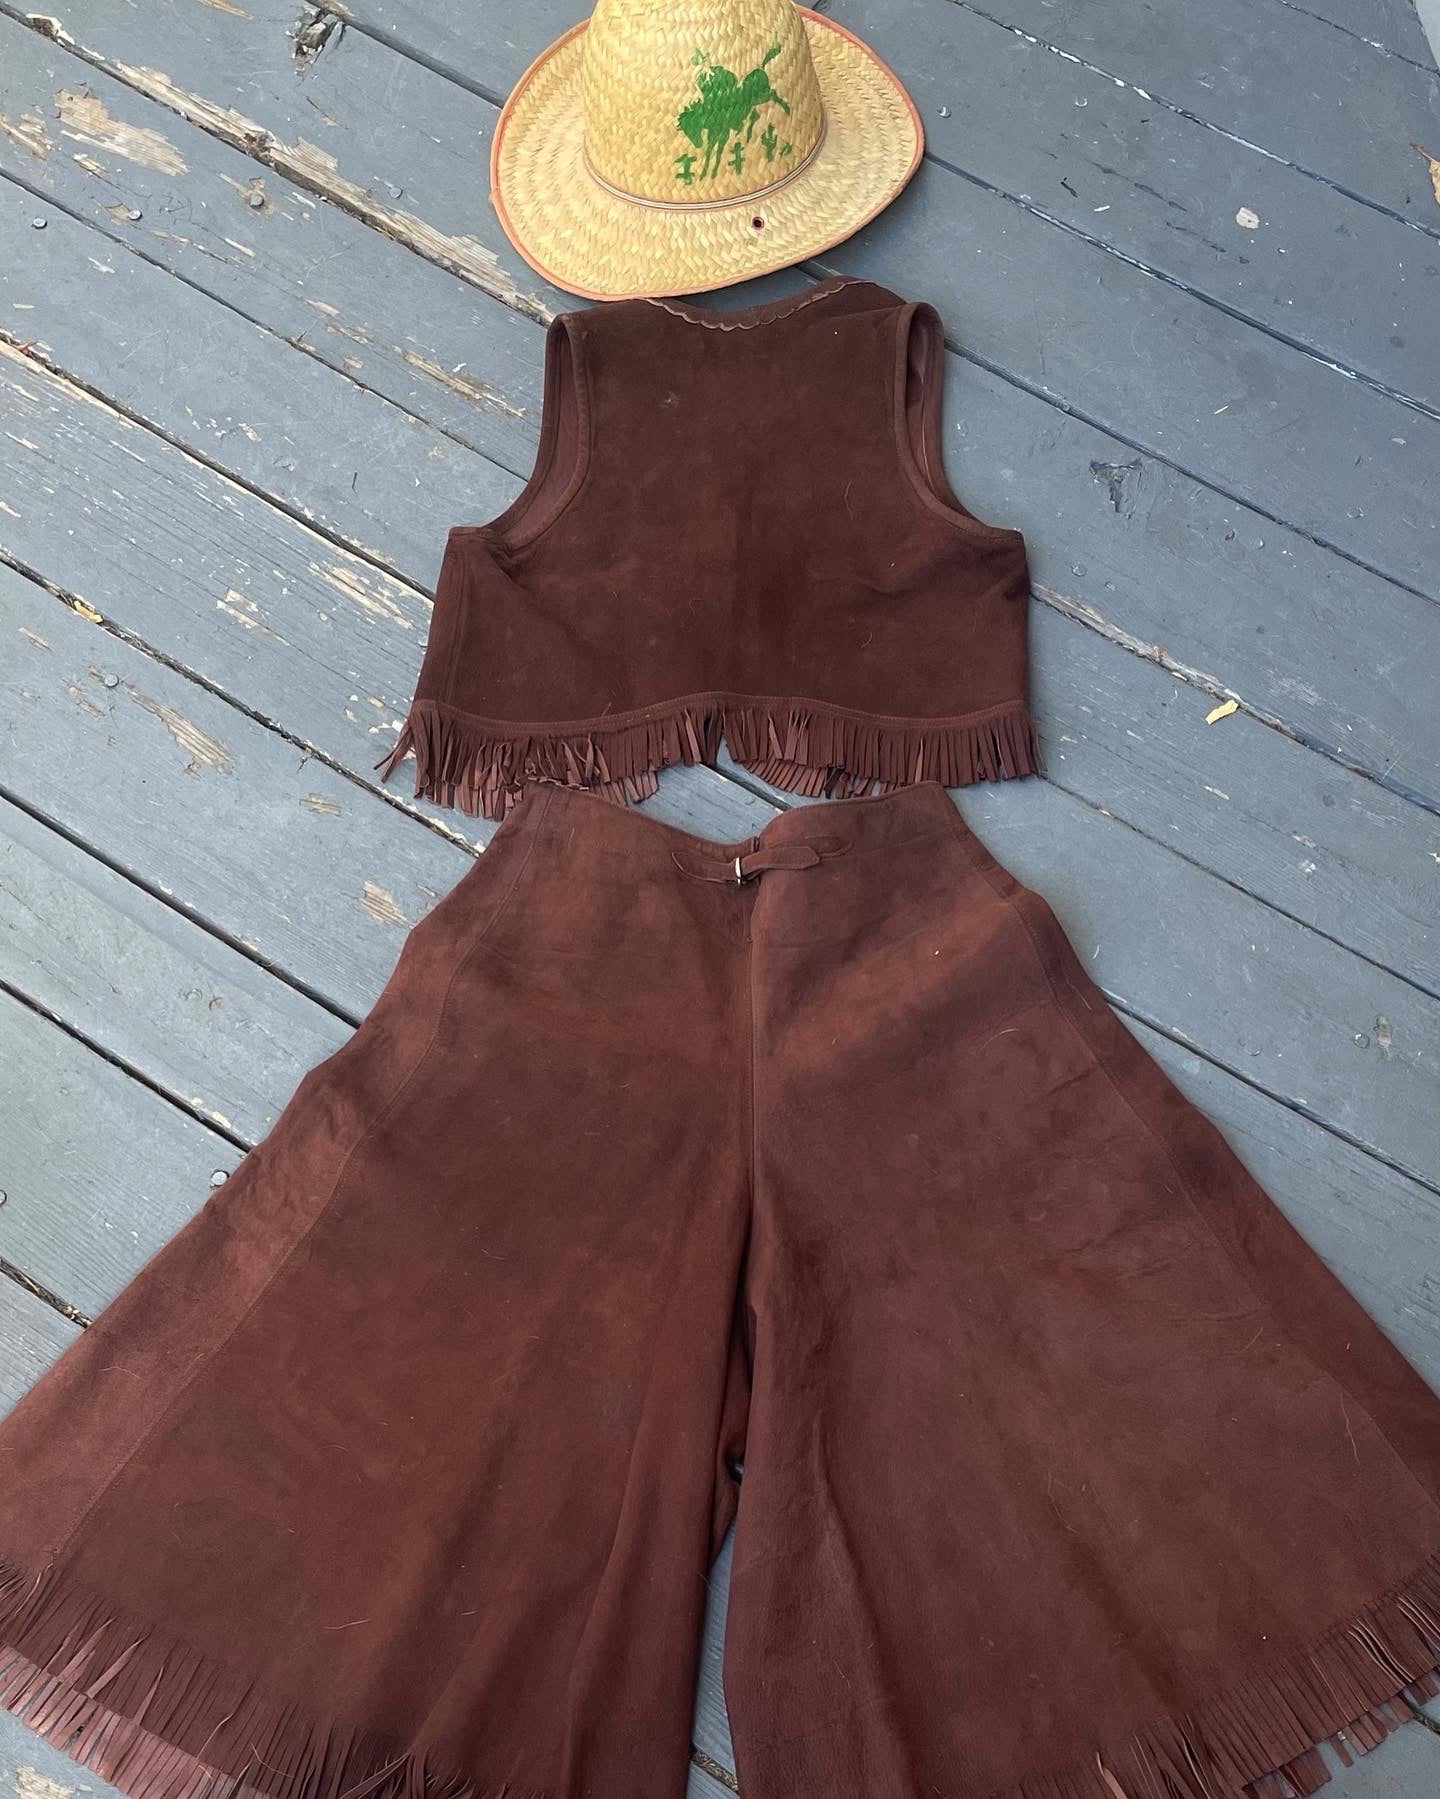 Rare 1940s Cinch Back 'Lasso'em Bill' Suede Fringe Cowgirl Split Skirt Vest Ensemble